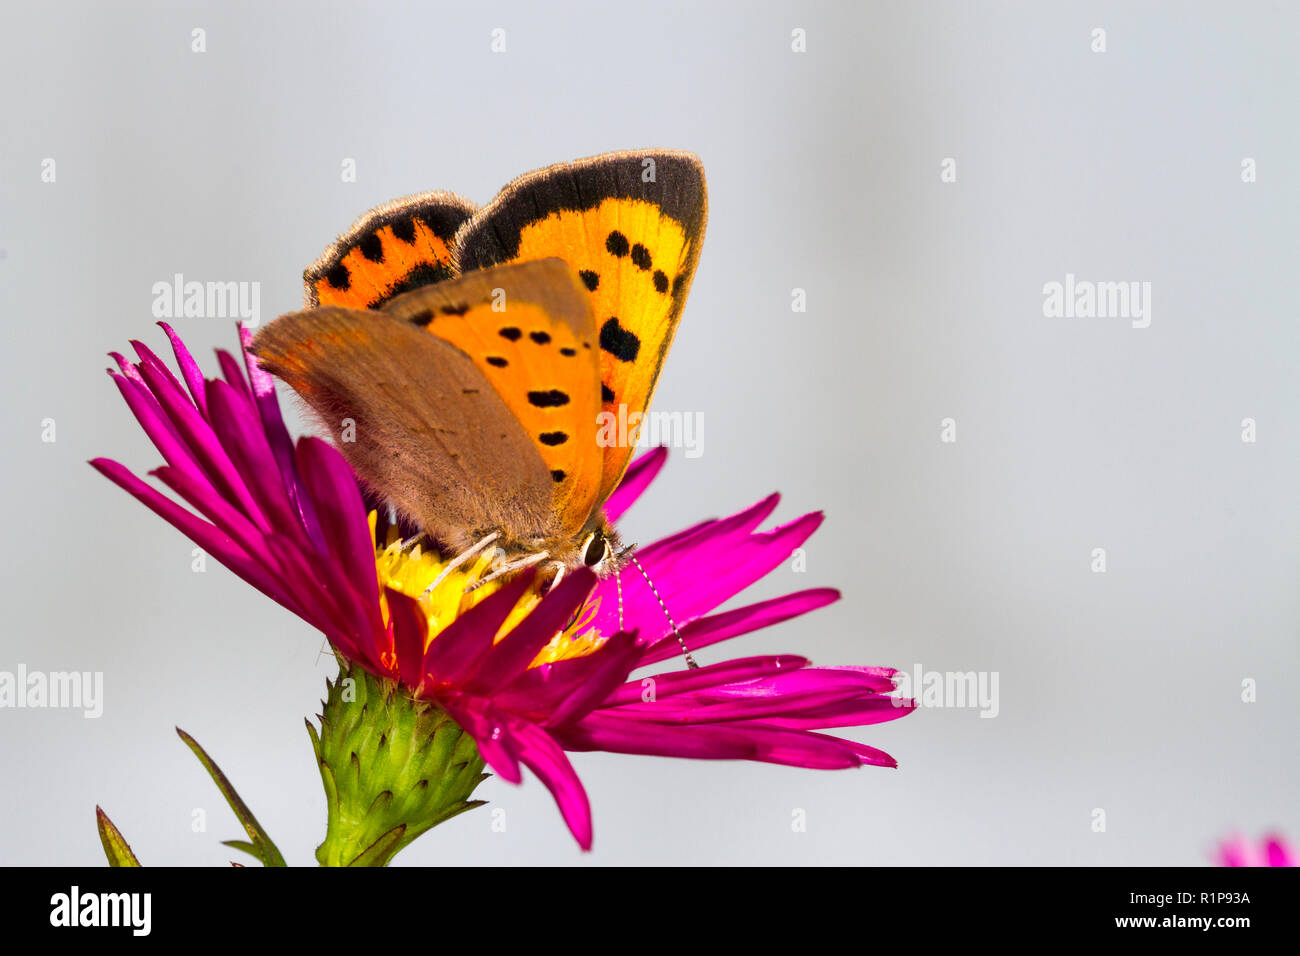 Petite phlaeus (Lycaena) papillon adulte se nourrit de Michealmas daisy fleurs dans un jardin. Powys, Pays de Galles. Septembre. Banque D'Images